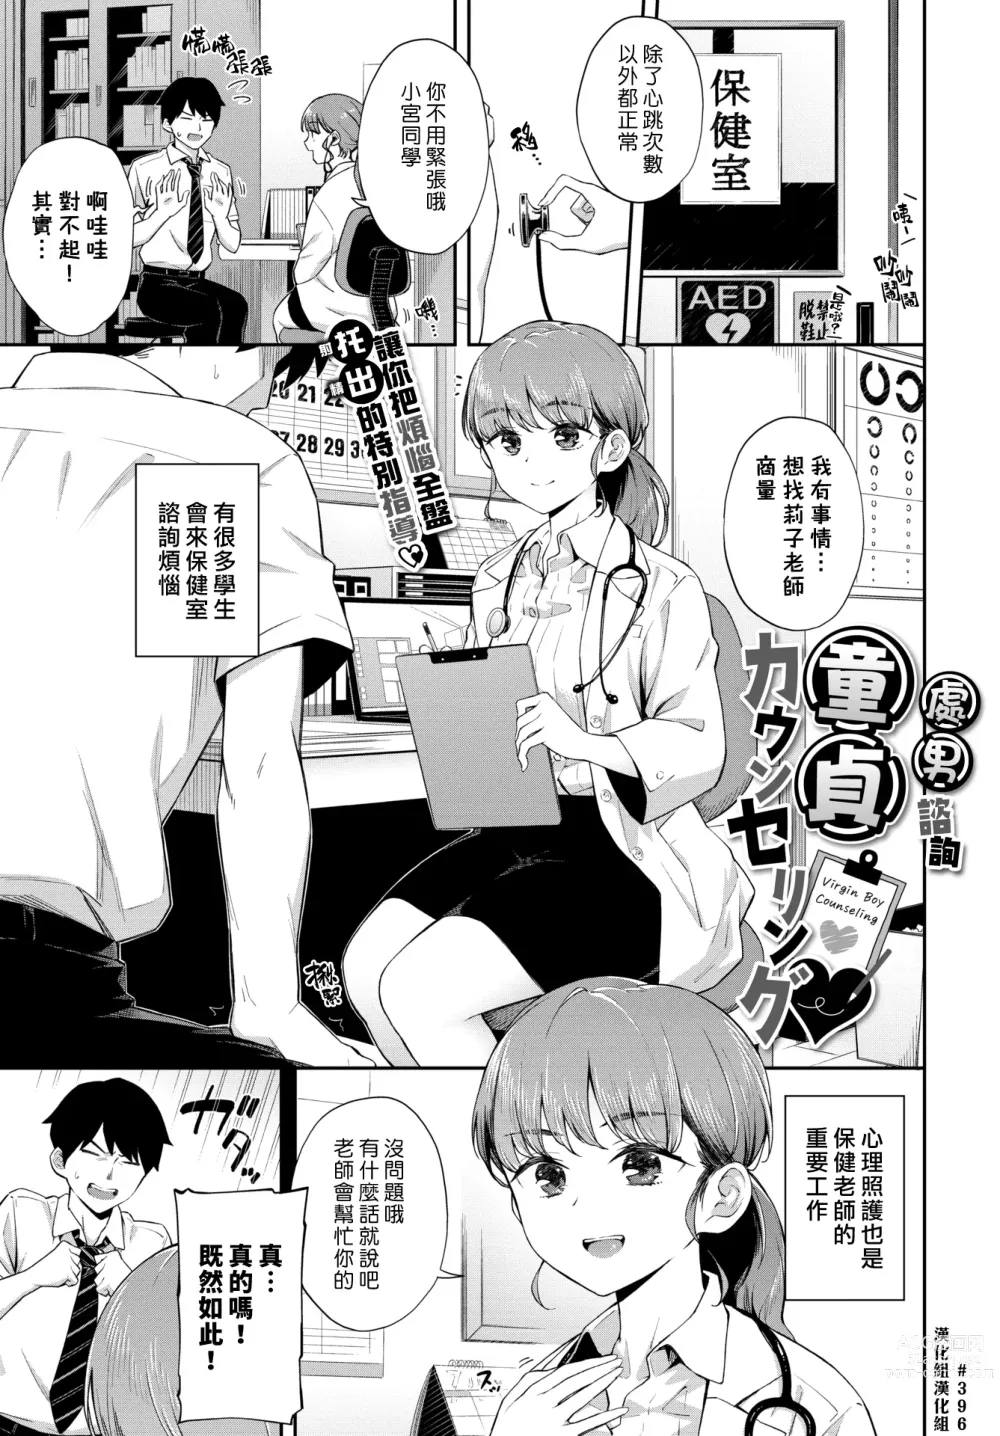 Page 1 of manga 處男諮詢